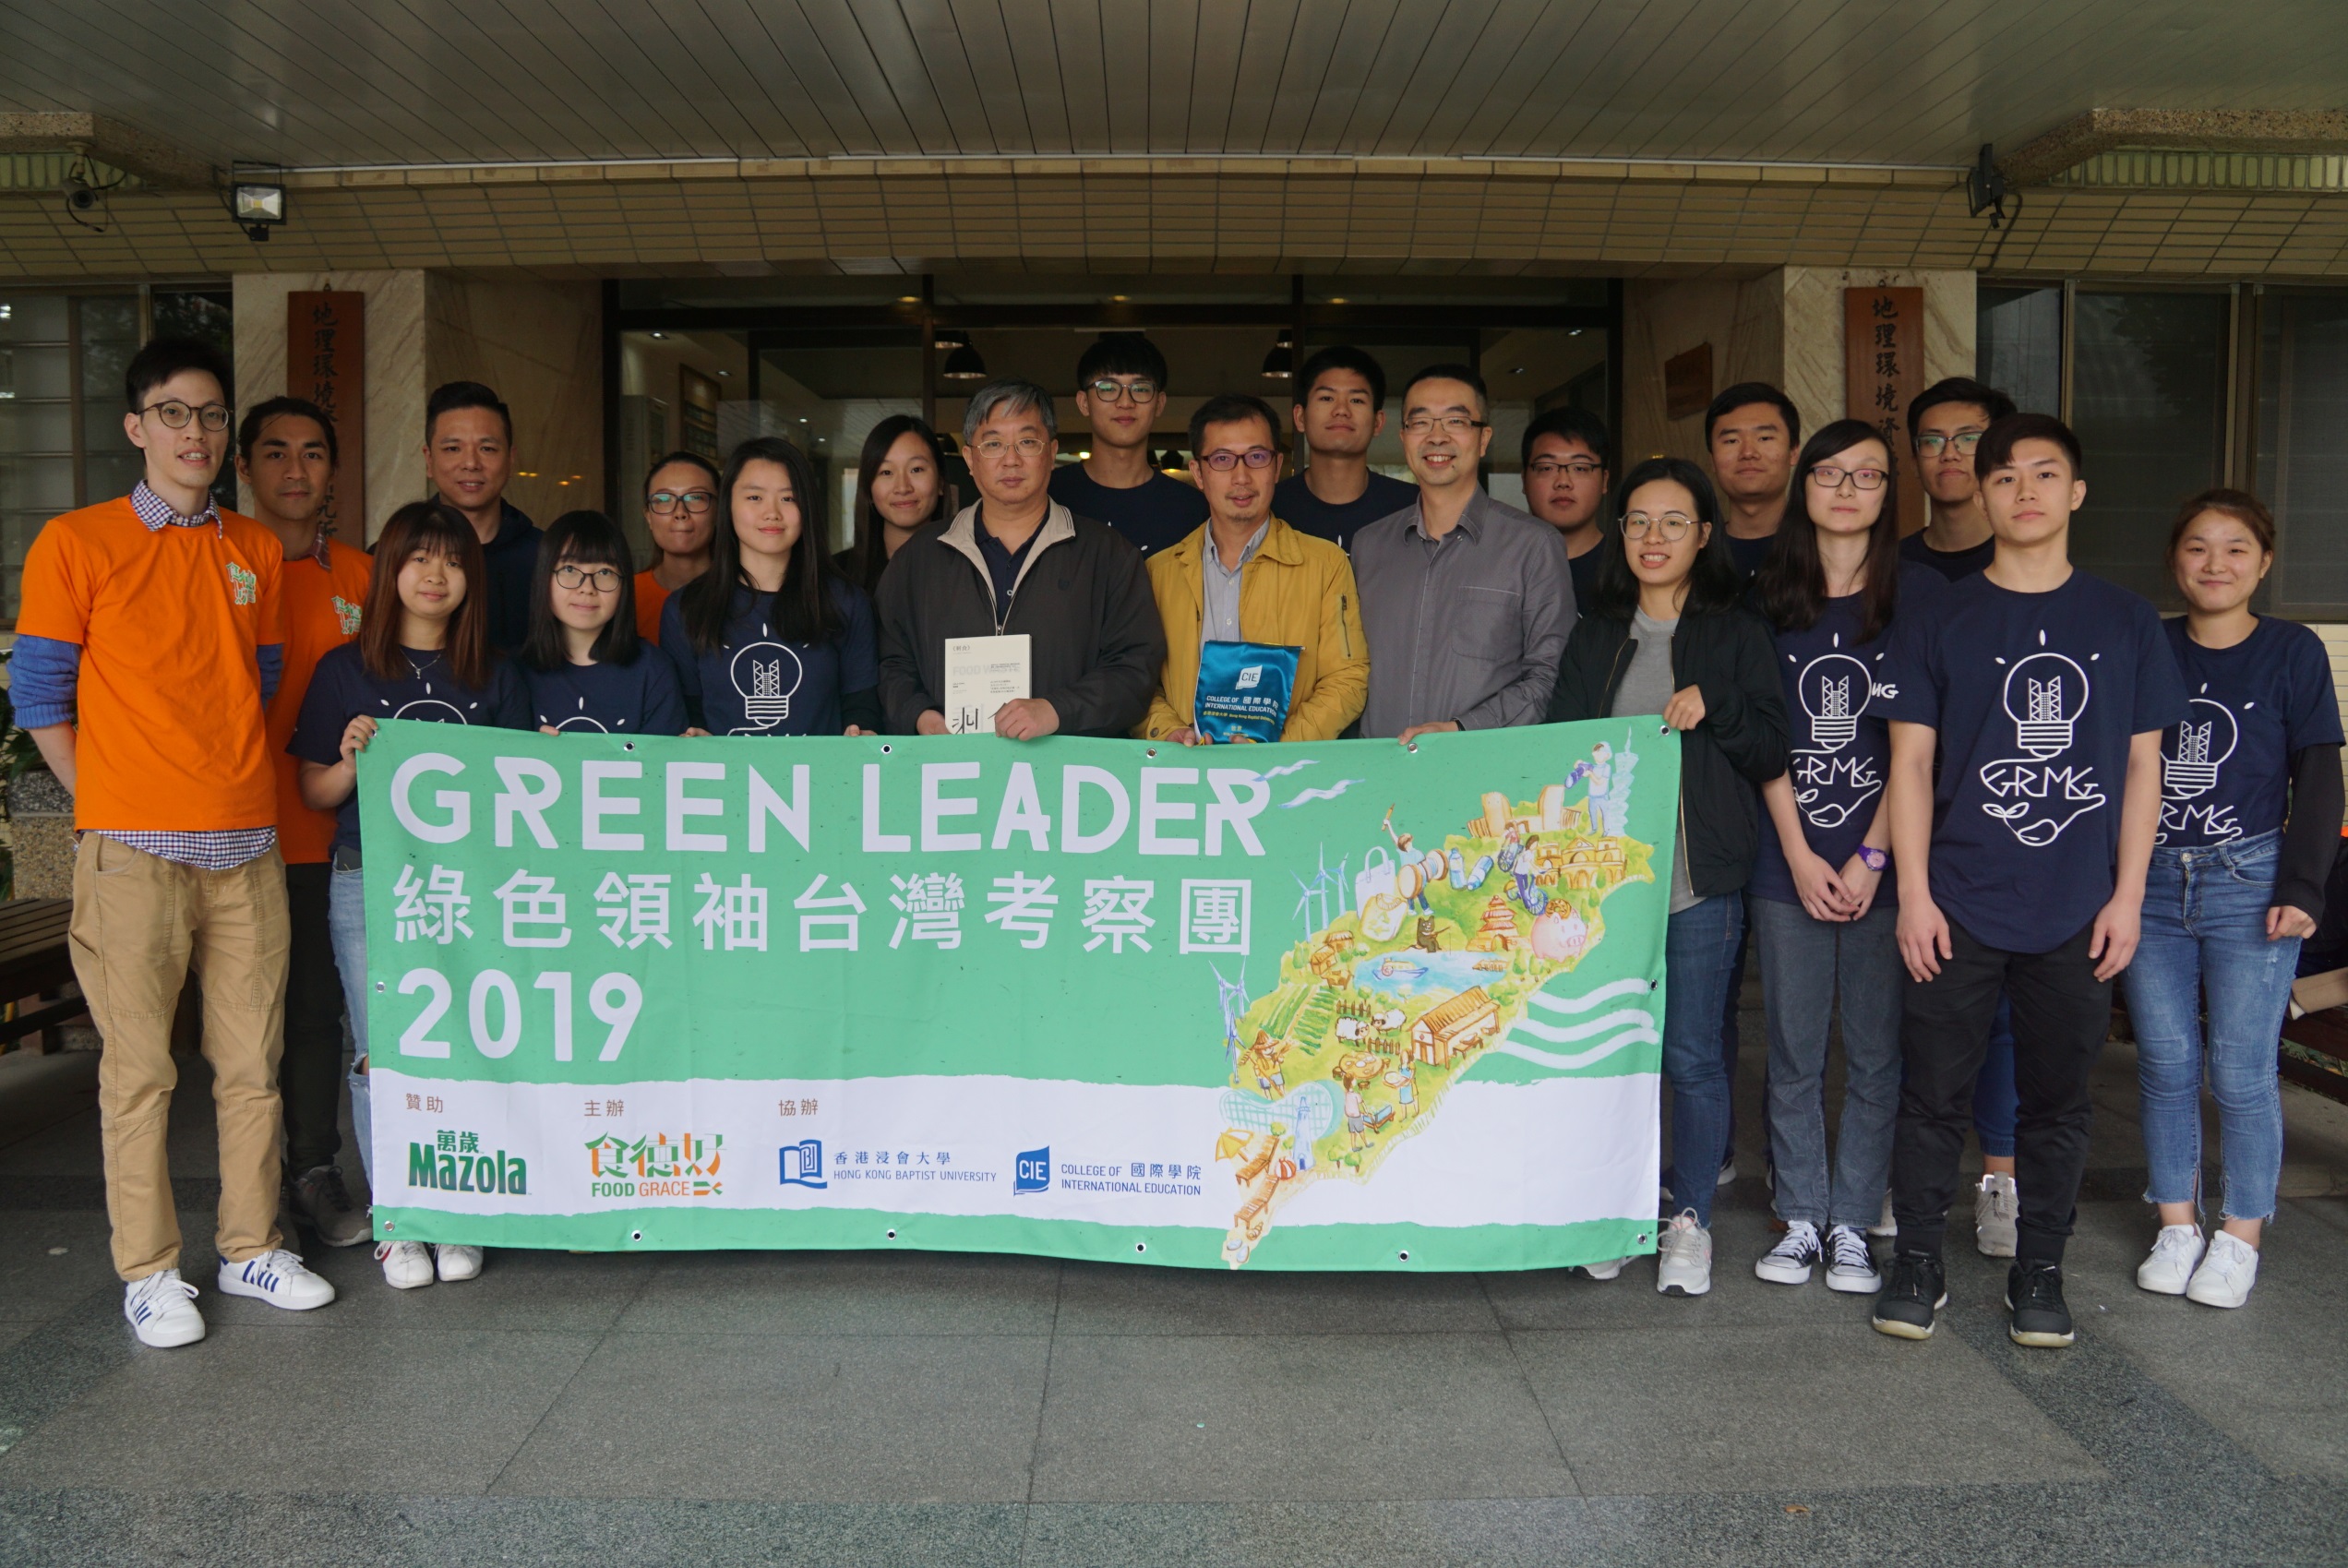 修讀地理及資源管理學生與國立台灣大學地理及資源管理學系師生交流。